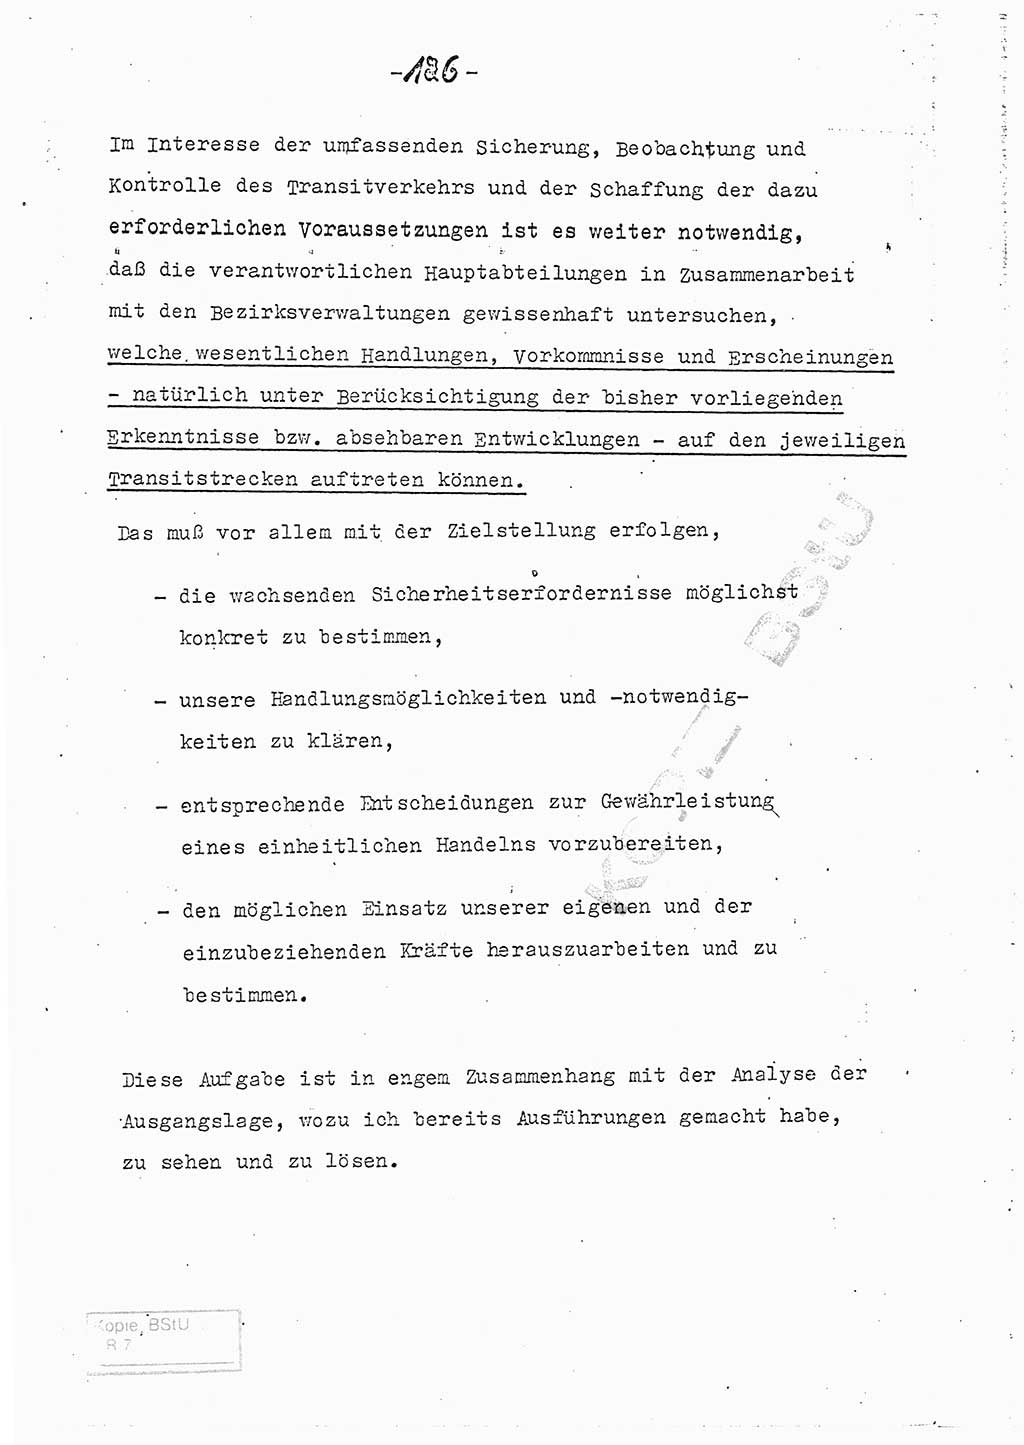 Referat (Entwurf) des Genossen Minister (Generaloberst Erich Mielke) auf der Dienstkonferenz 1972, Ministerium für Staatssicherheit (MfS) [Deutsche Demokratische Republik (DDR)], Der Minister, Geheime Verschlußsache (GVS) 008-150/72, Berlin 25.2.1972, Seite 126 (Ref. Entw. DK MfS DDR Min. GVS 008-150/72 1972, S. 126)